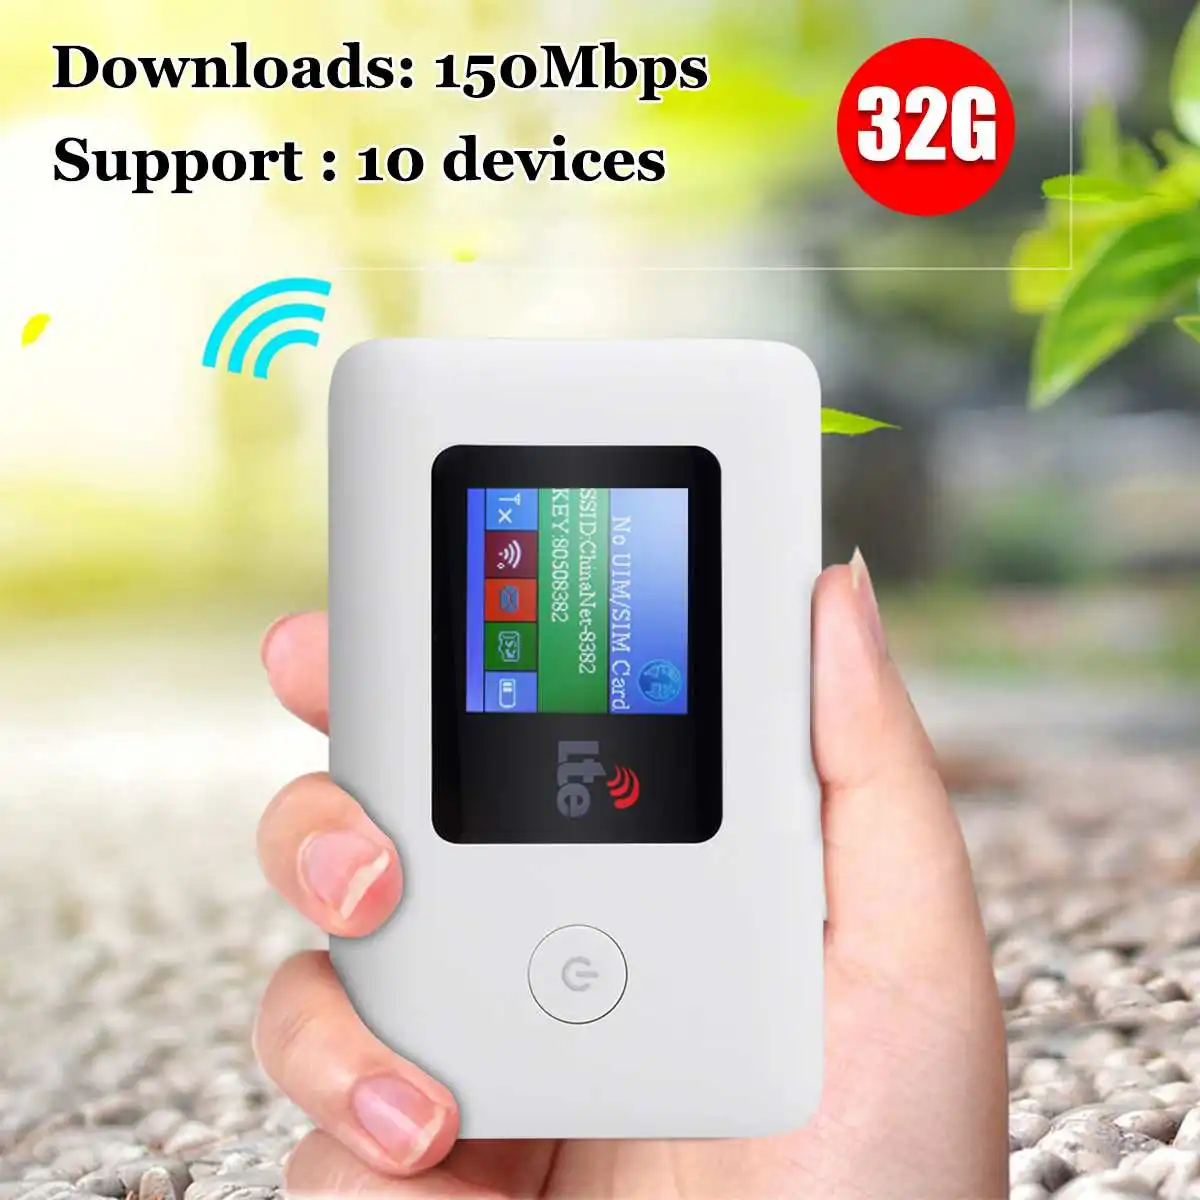 4 г Wi Fi маршрутизатор автомобиль Мобильная точка доступа 150 Мбит/с текстовое сообщение функция Беспроводная разблокировка LTE модем ЖК